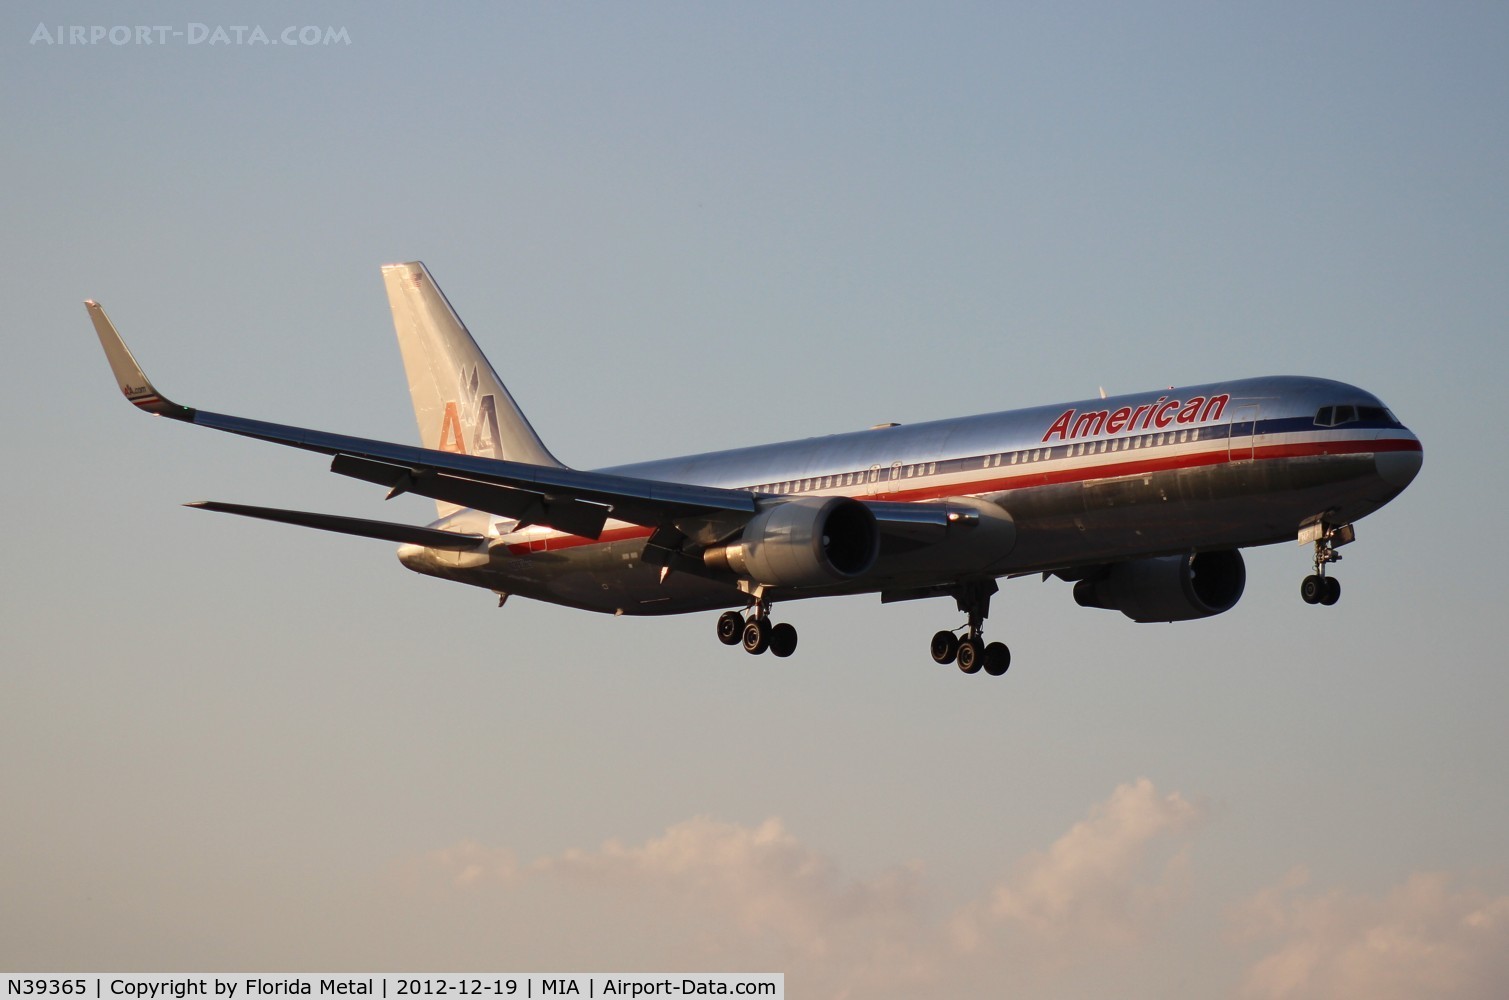 N39365, 1988 Boeing 767-323 C/N 24046, American 767-300